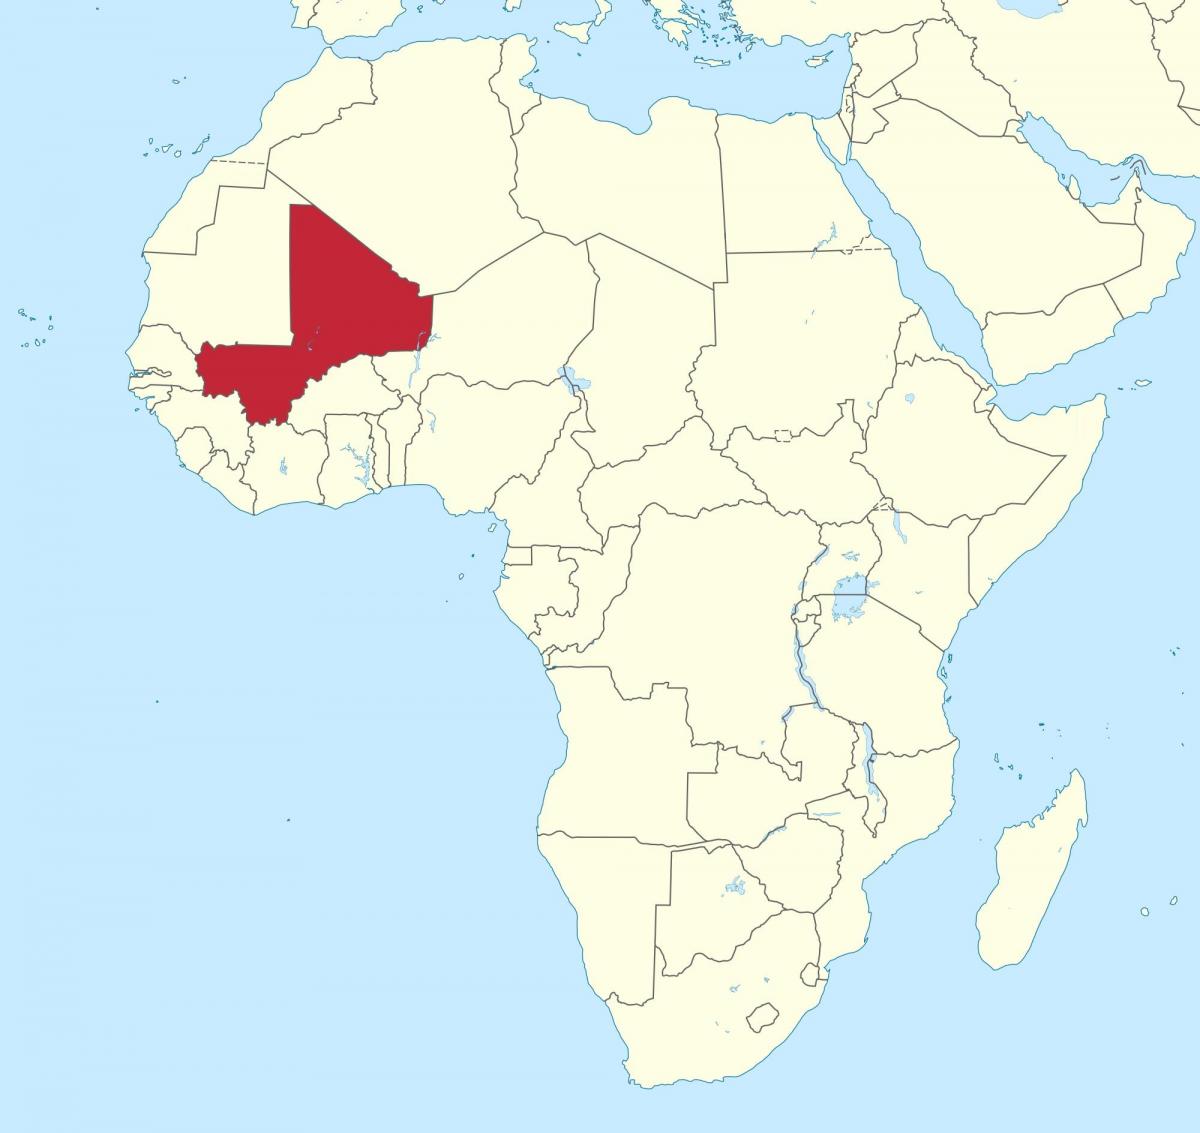 Mali eneo kwenye ramani ya dunia